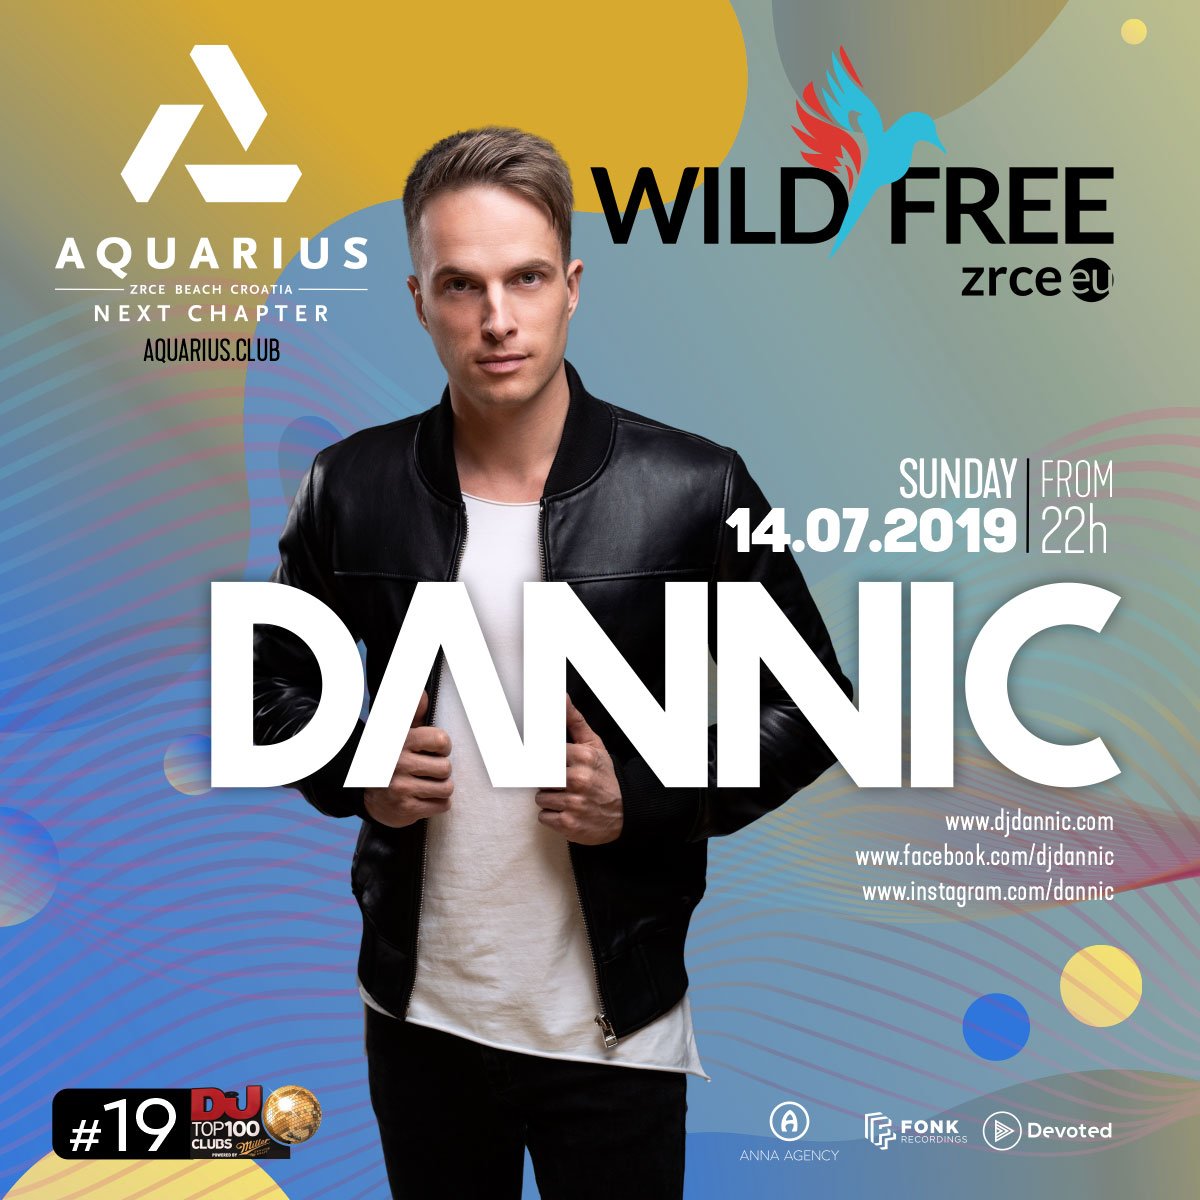 Dannic 14.7.2019 klub Aquarius